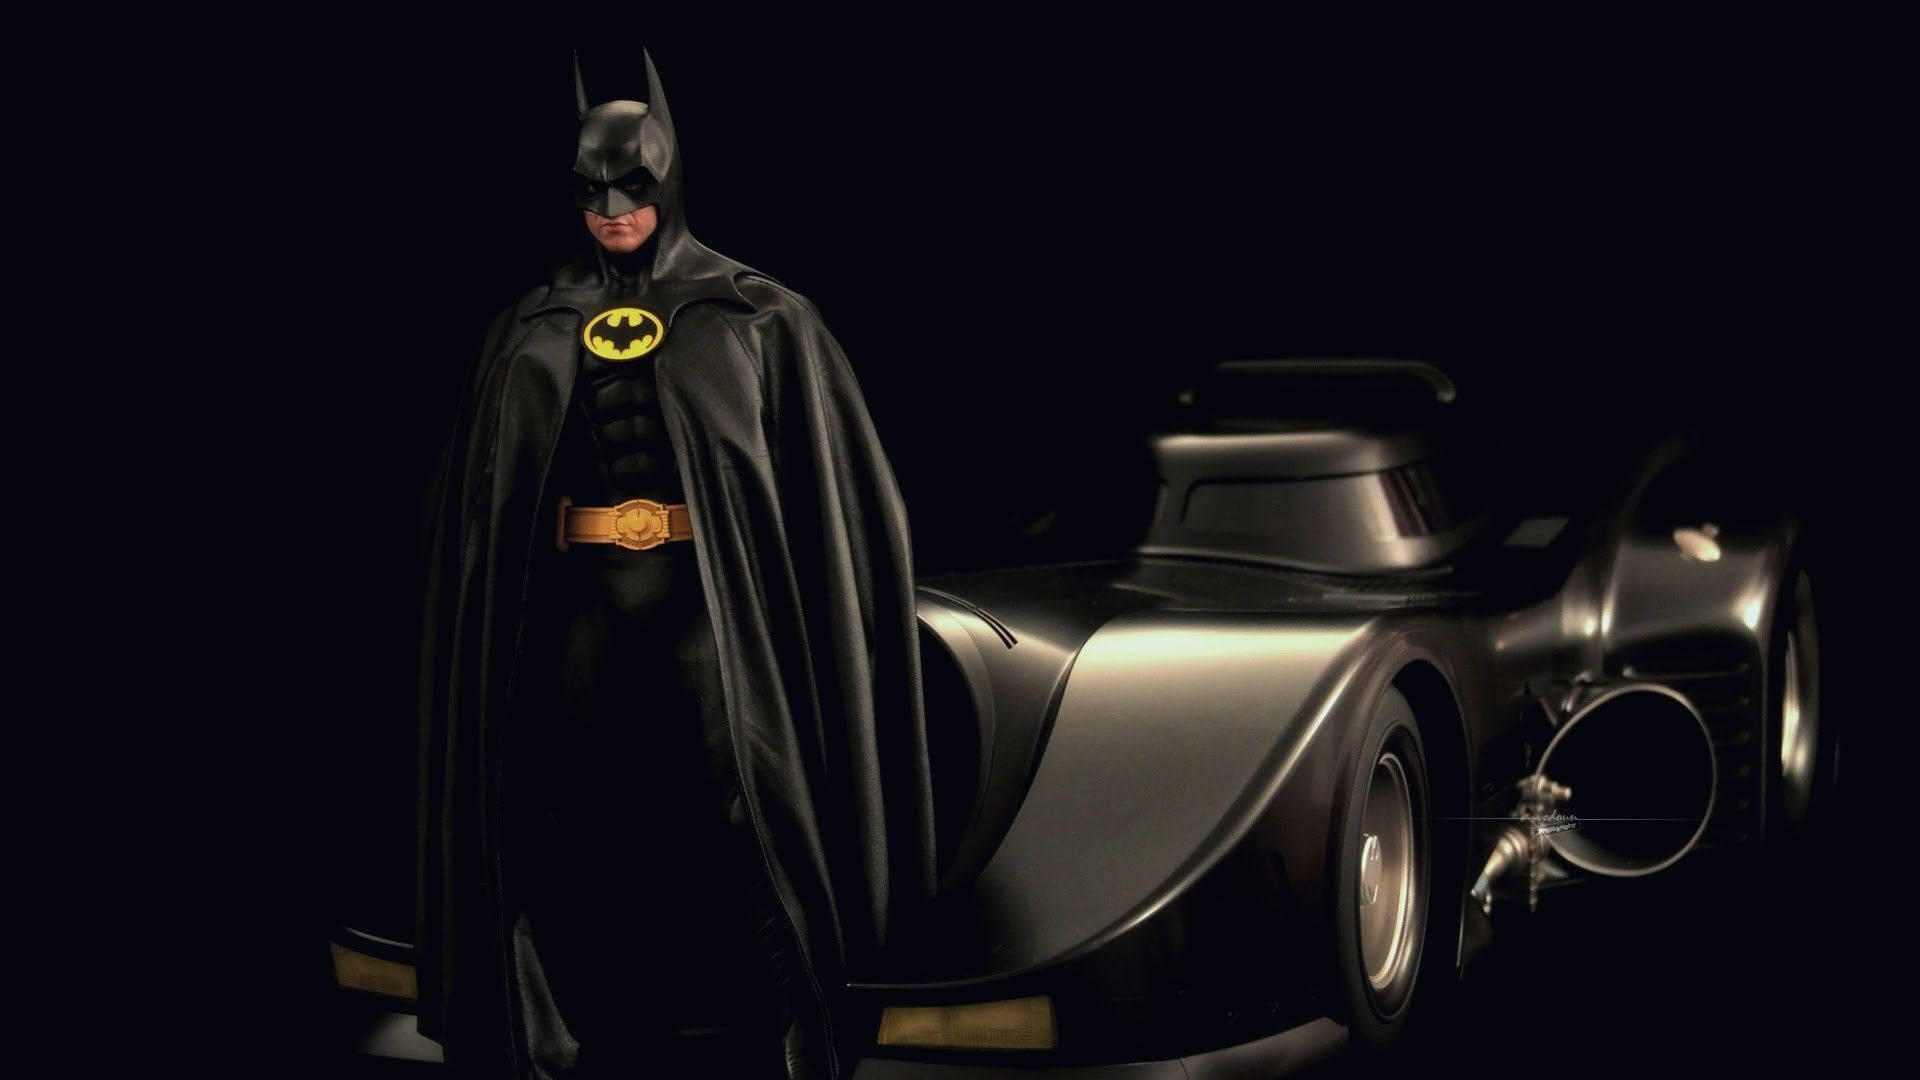 Batman And Batmobile In Darkness Wallpaper